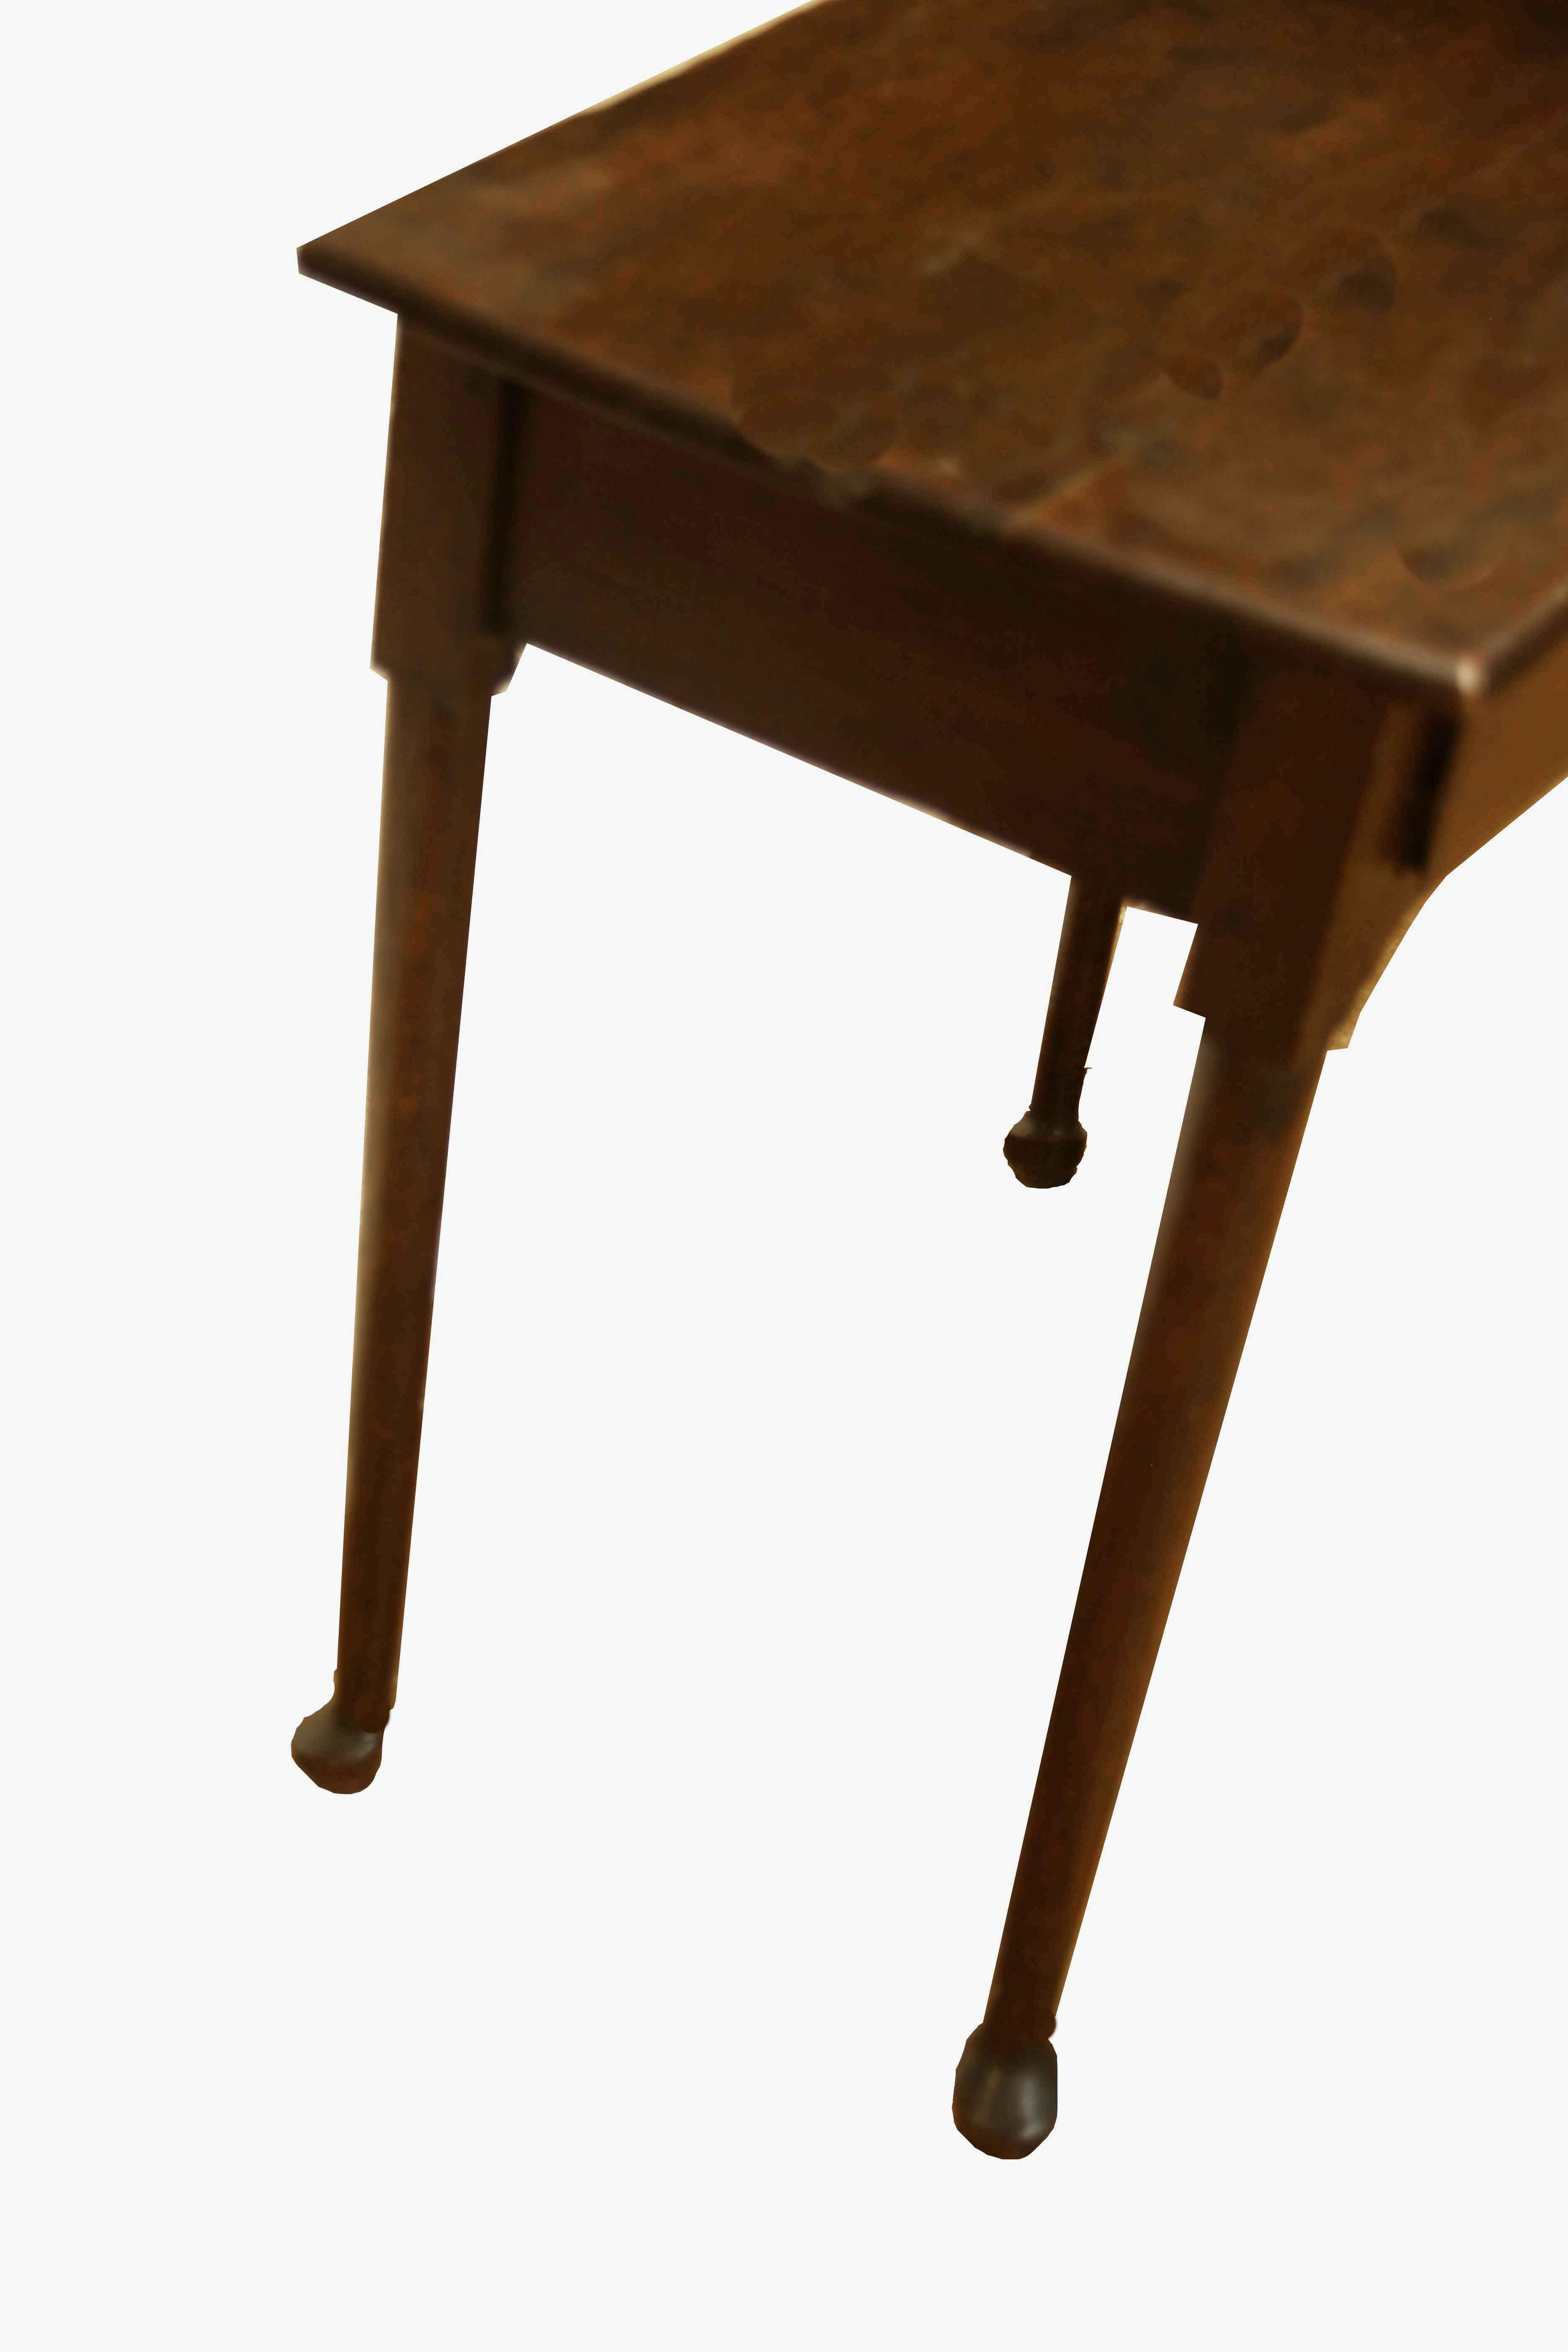 Period Queen Anne Eiche Beistelltisch, dieser frühen 18. Jahrhundert Tisch hat schöne dunkle Patina, einzelne Schublade mit Zentrum Messing ziehen (nicht original), Kiefer Sekundärholz.  Die schlanken Beine enden in Pad-Füßen; an jedem Bein befinden